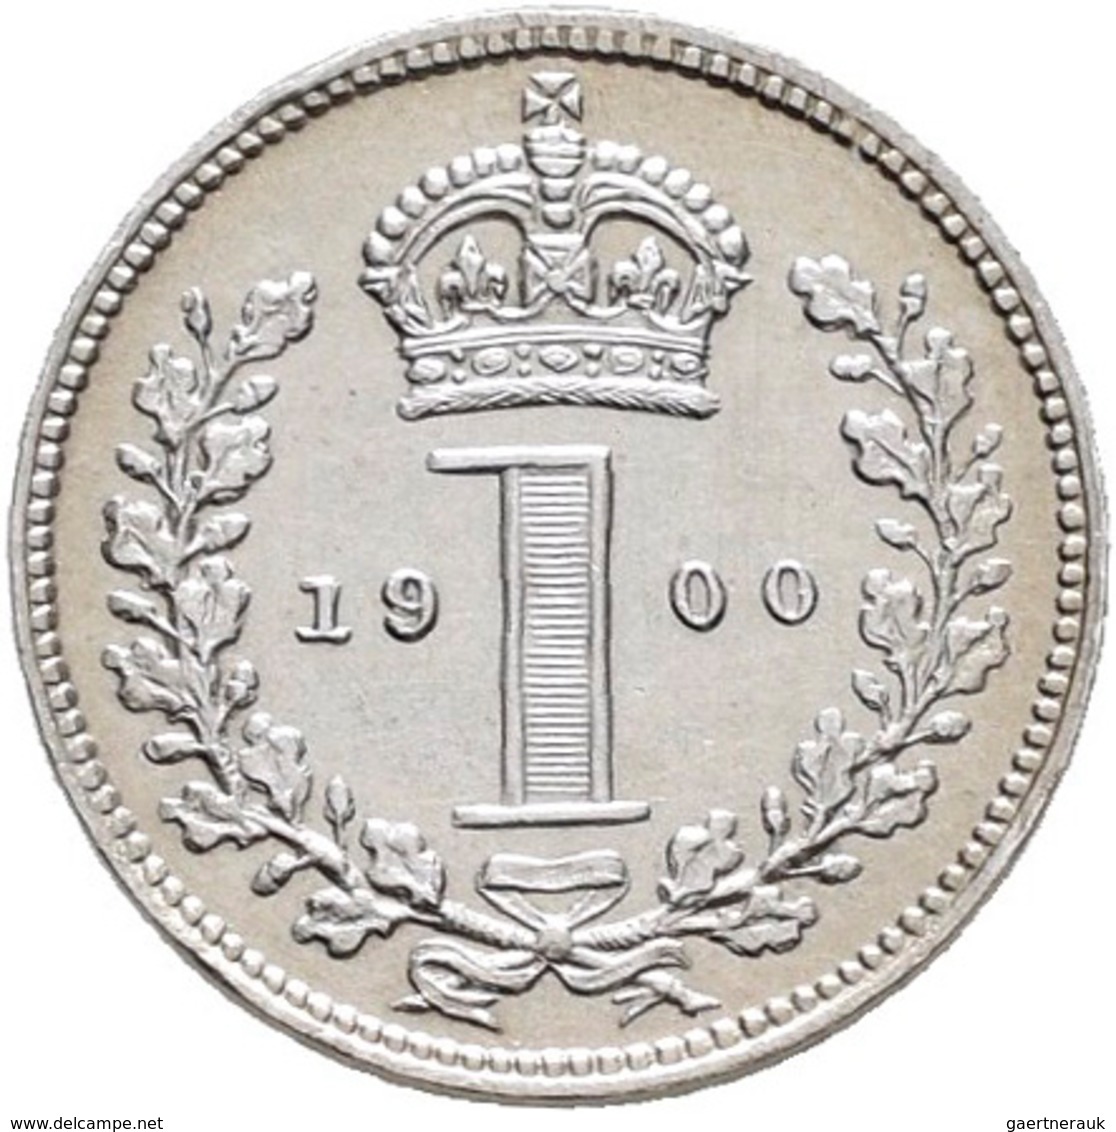 Großbritannien: Victoria 1837-1901: Maundy Set 1,2,3,4 Pence 1900, vorzüglich-Stempelglanz, Stempelg